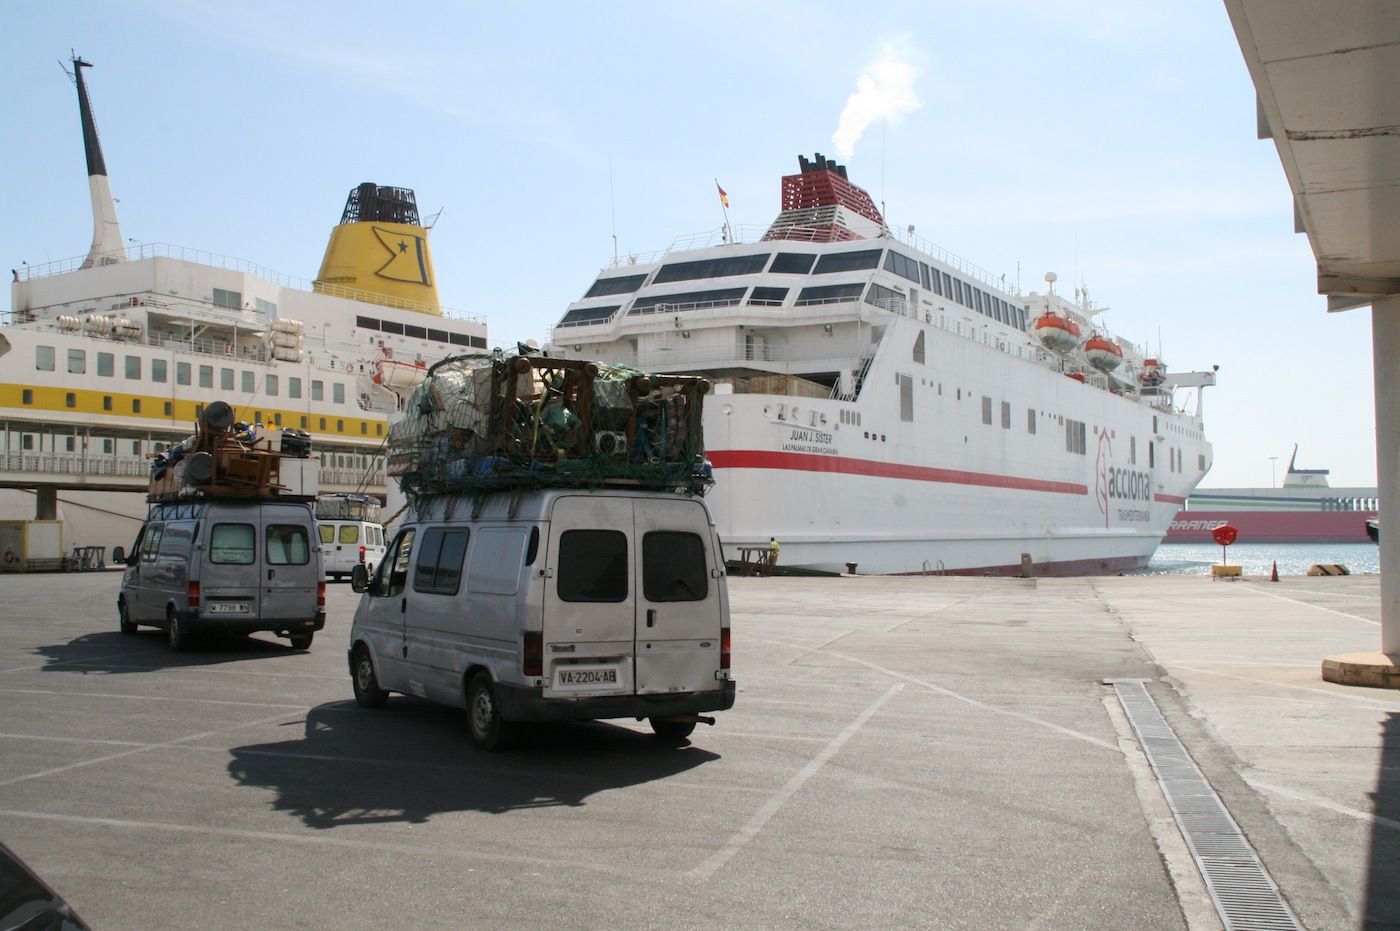 Operacion paso del estrecho 2015 en el puerto de Almeria